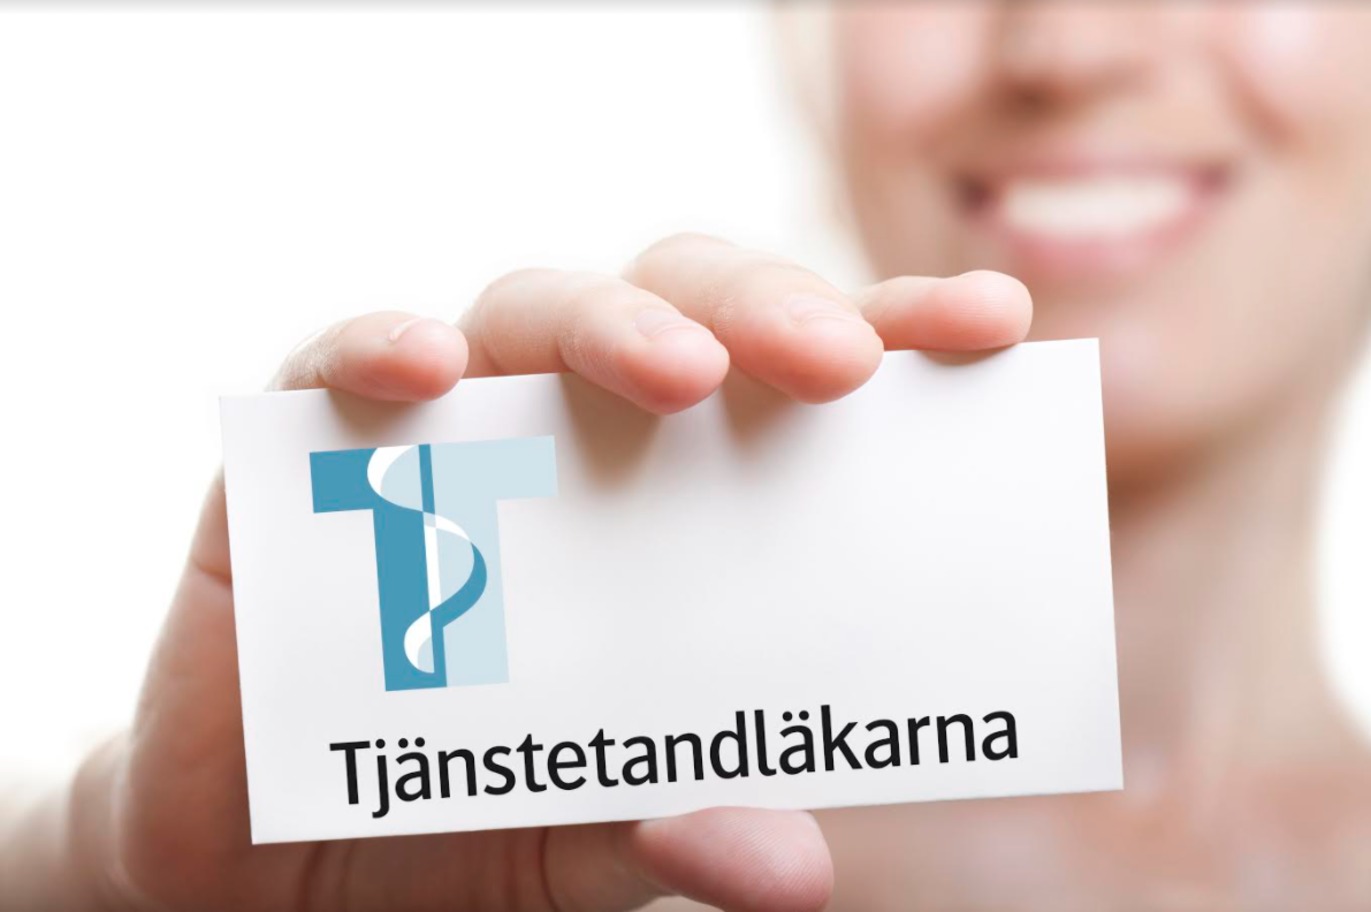 Tjänstetandläkarna Facklig organisation, Stockholm - 1